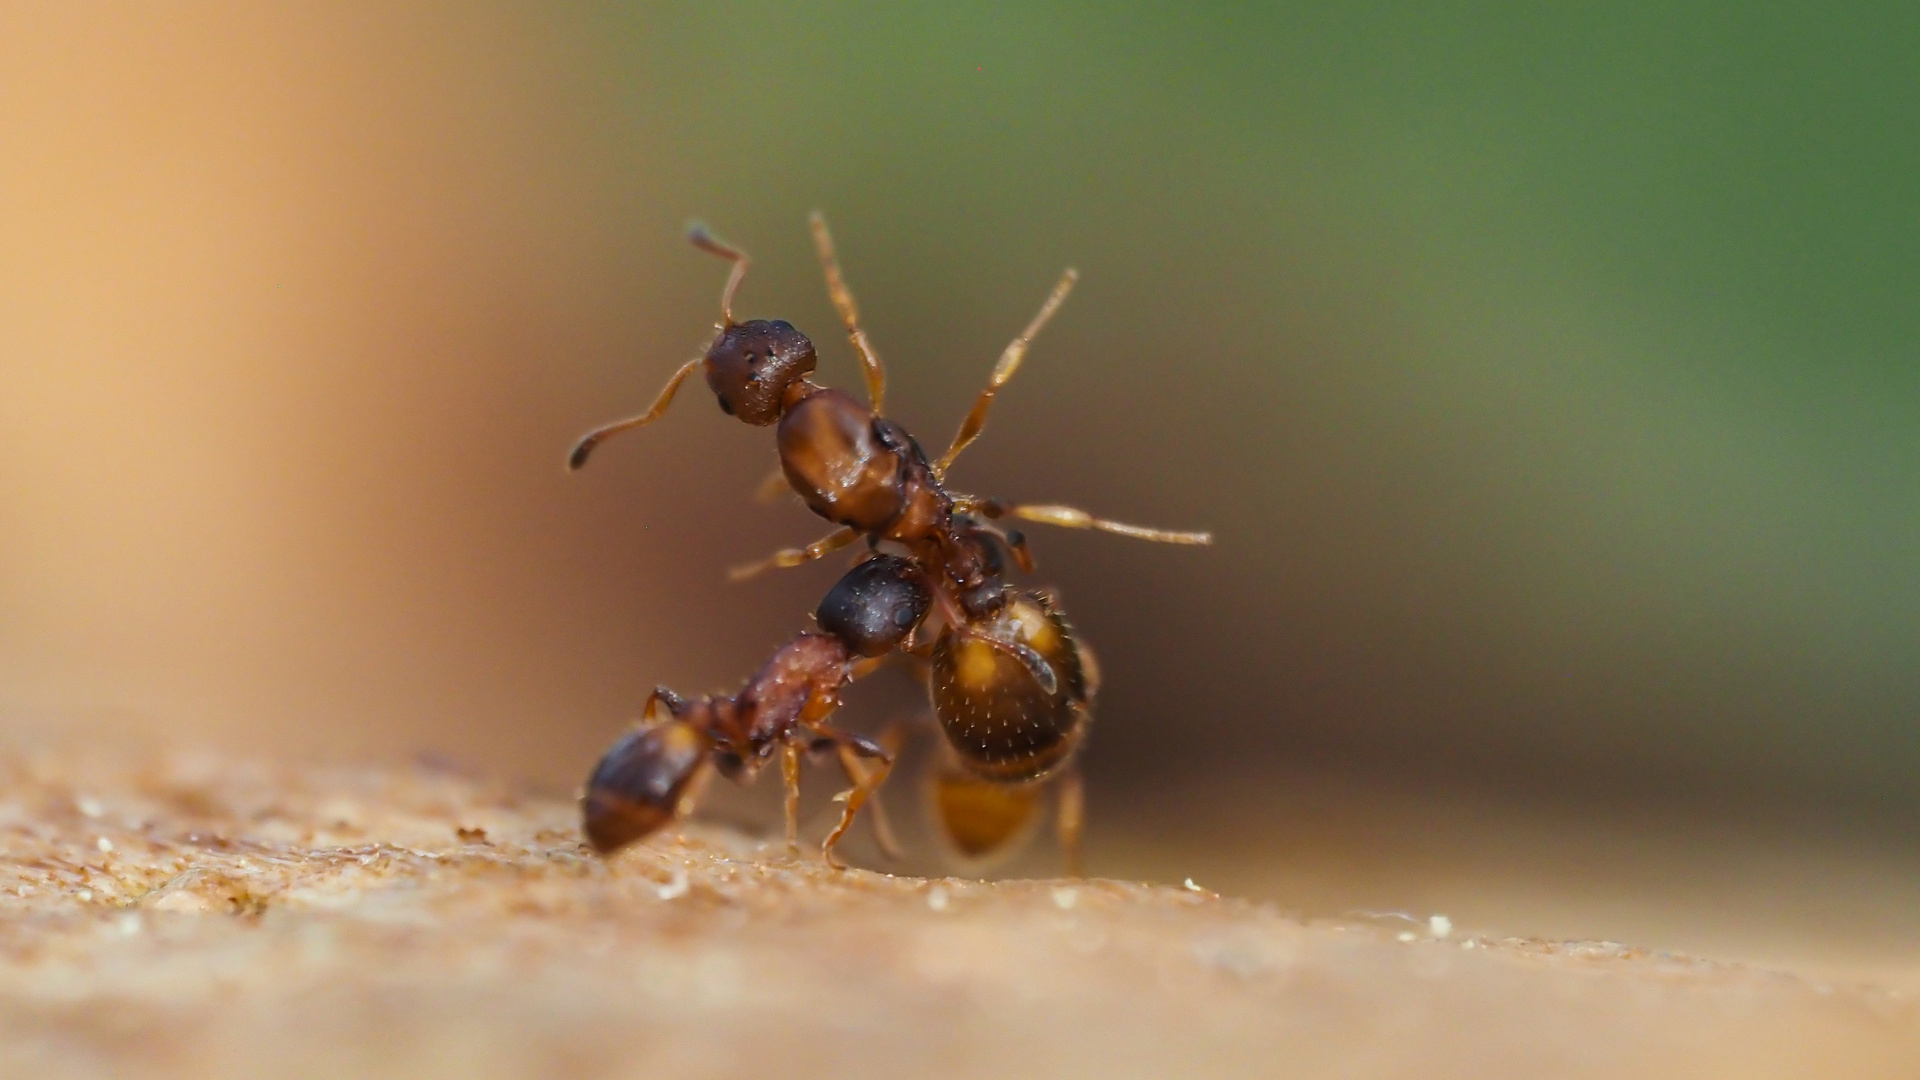 Ameisen verteidigen